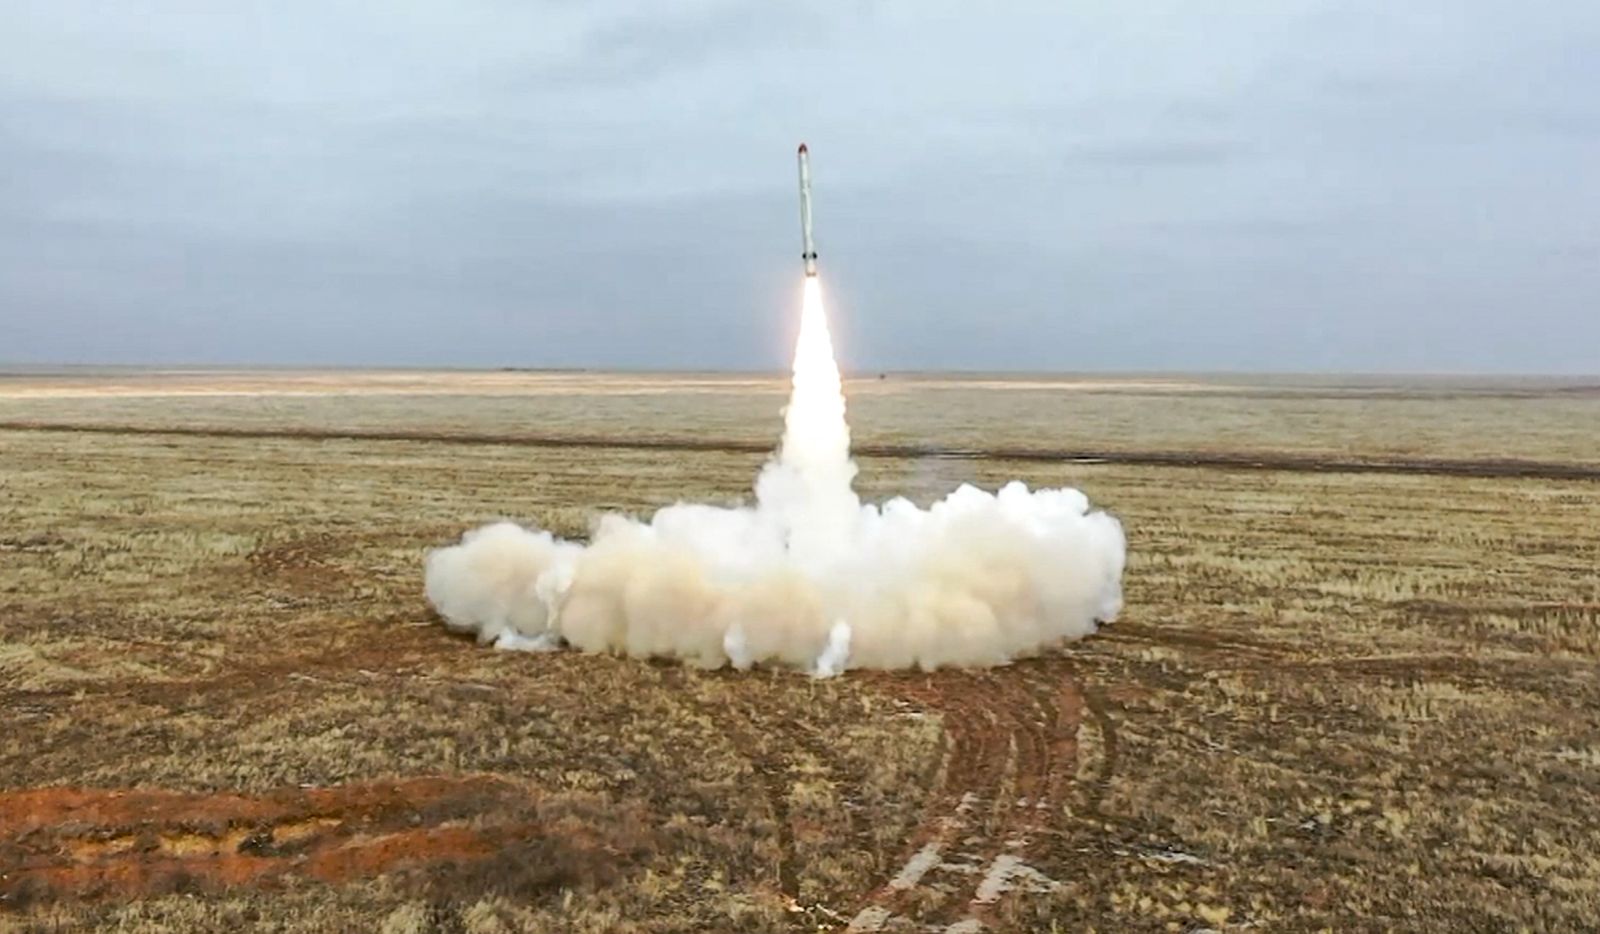 صاروخ روسي من طراز إسكندر، لدى إطلاقه خلال تدريب قوة الردع الاستراتيجية الروسية من مكان مجهول. 19 فبراير 2022 - AFP